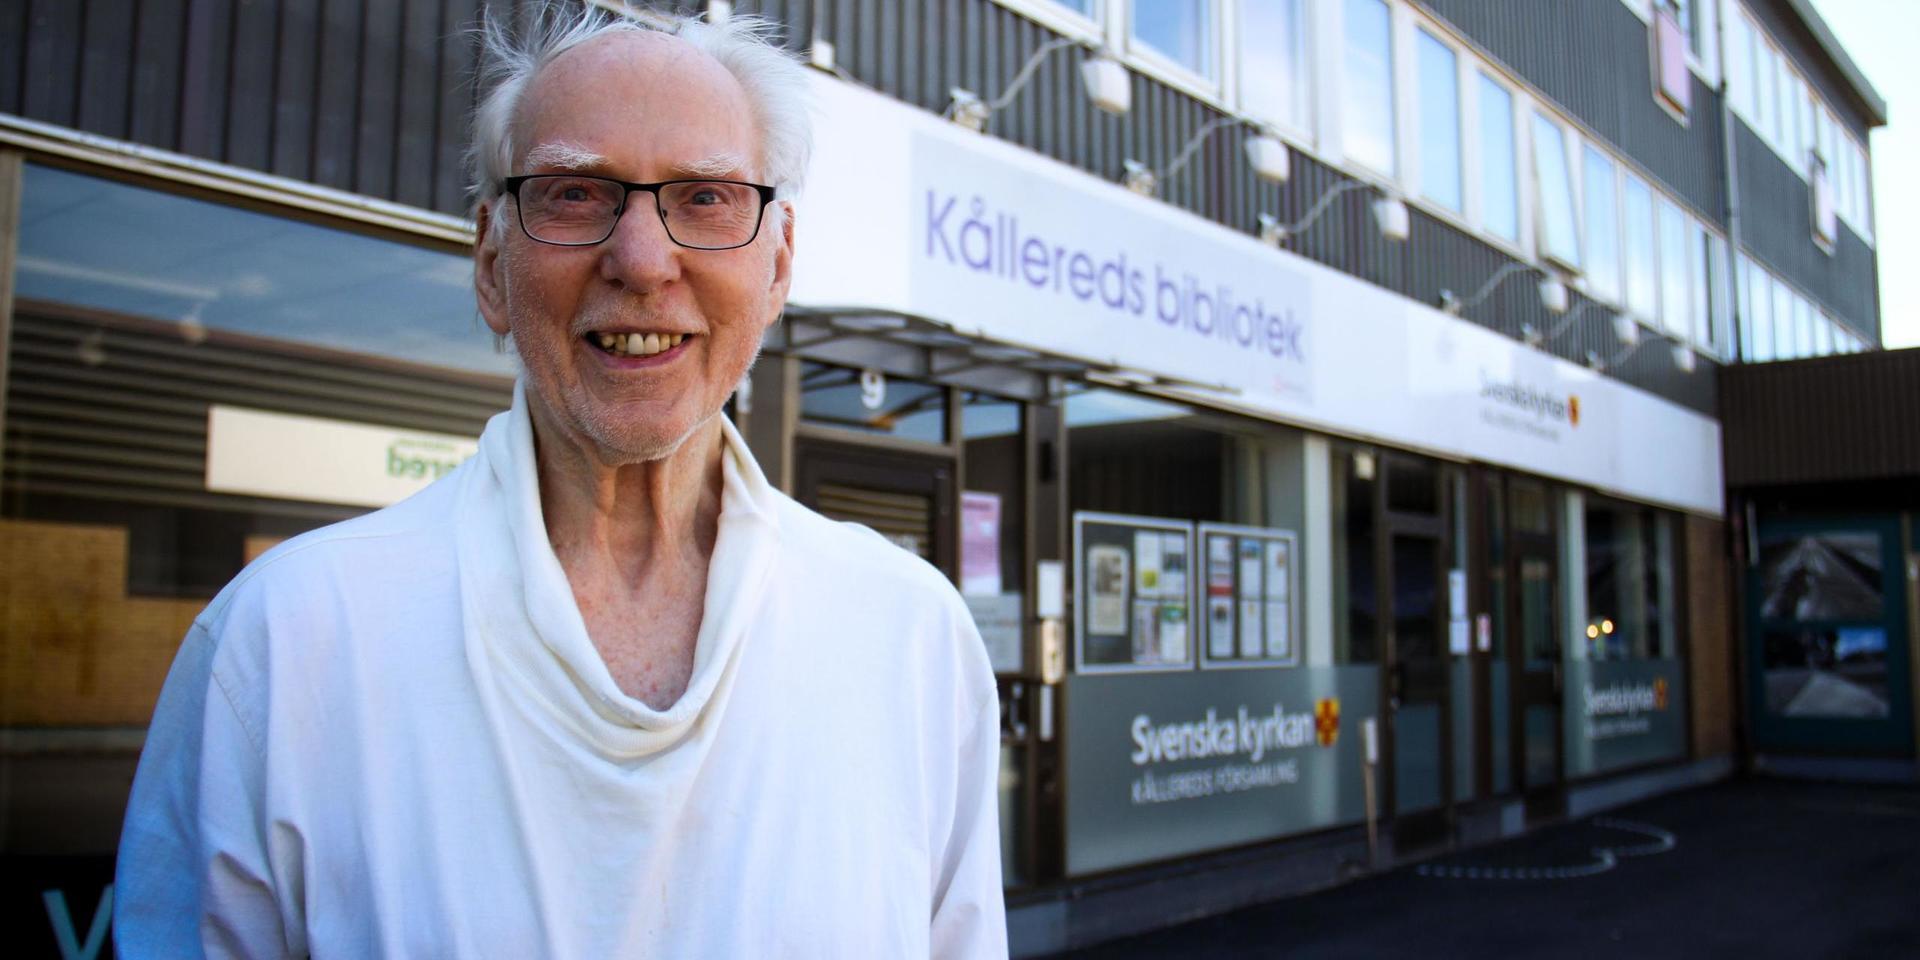 Stig Holmqvist har så många böcker och skivor hemma att det blir som ett eget bibliotek, men han går ändå ofta till Kållereds bibliotek. 